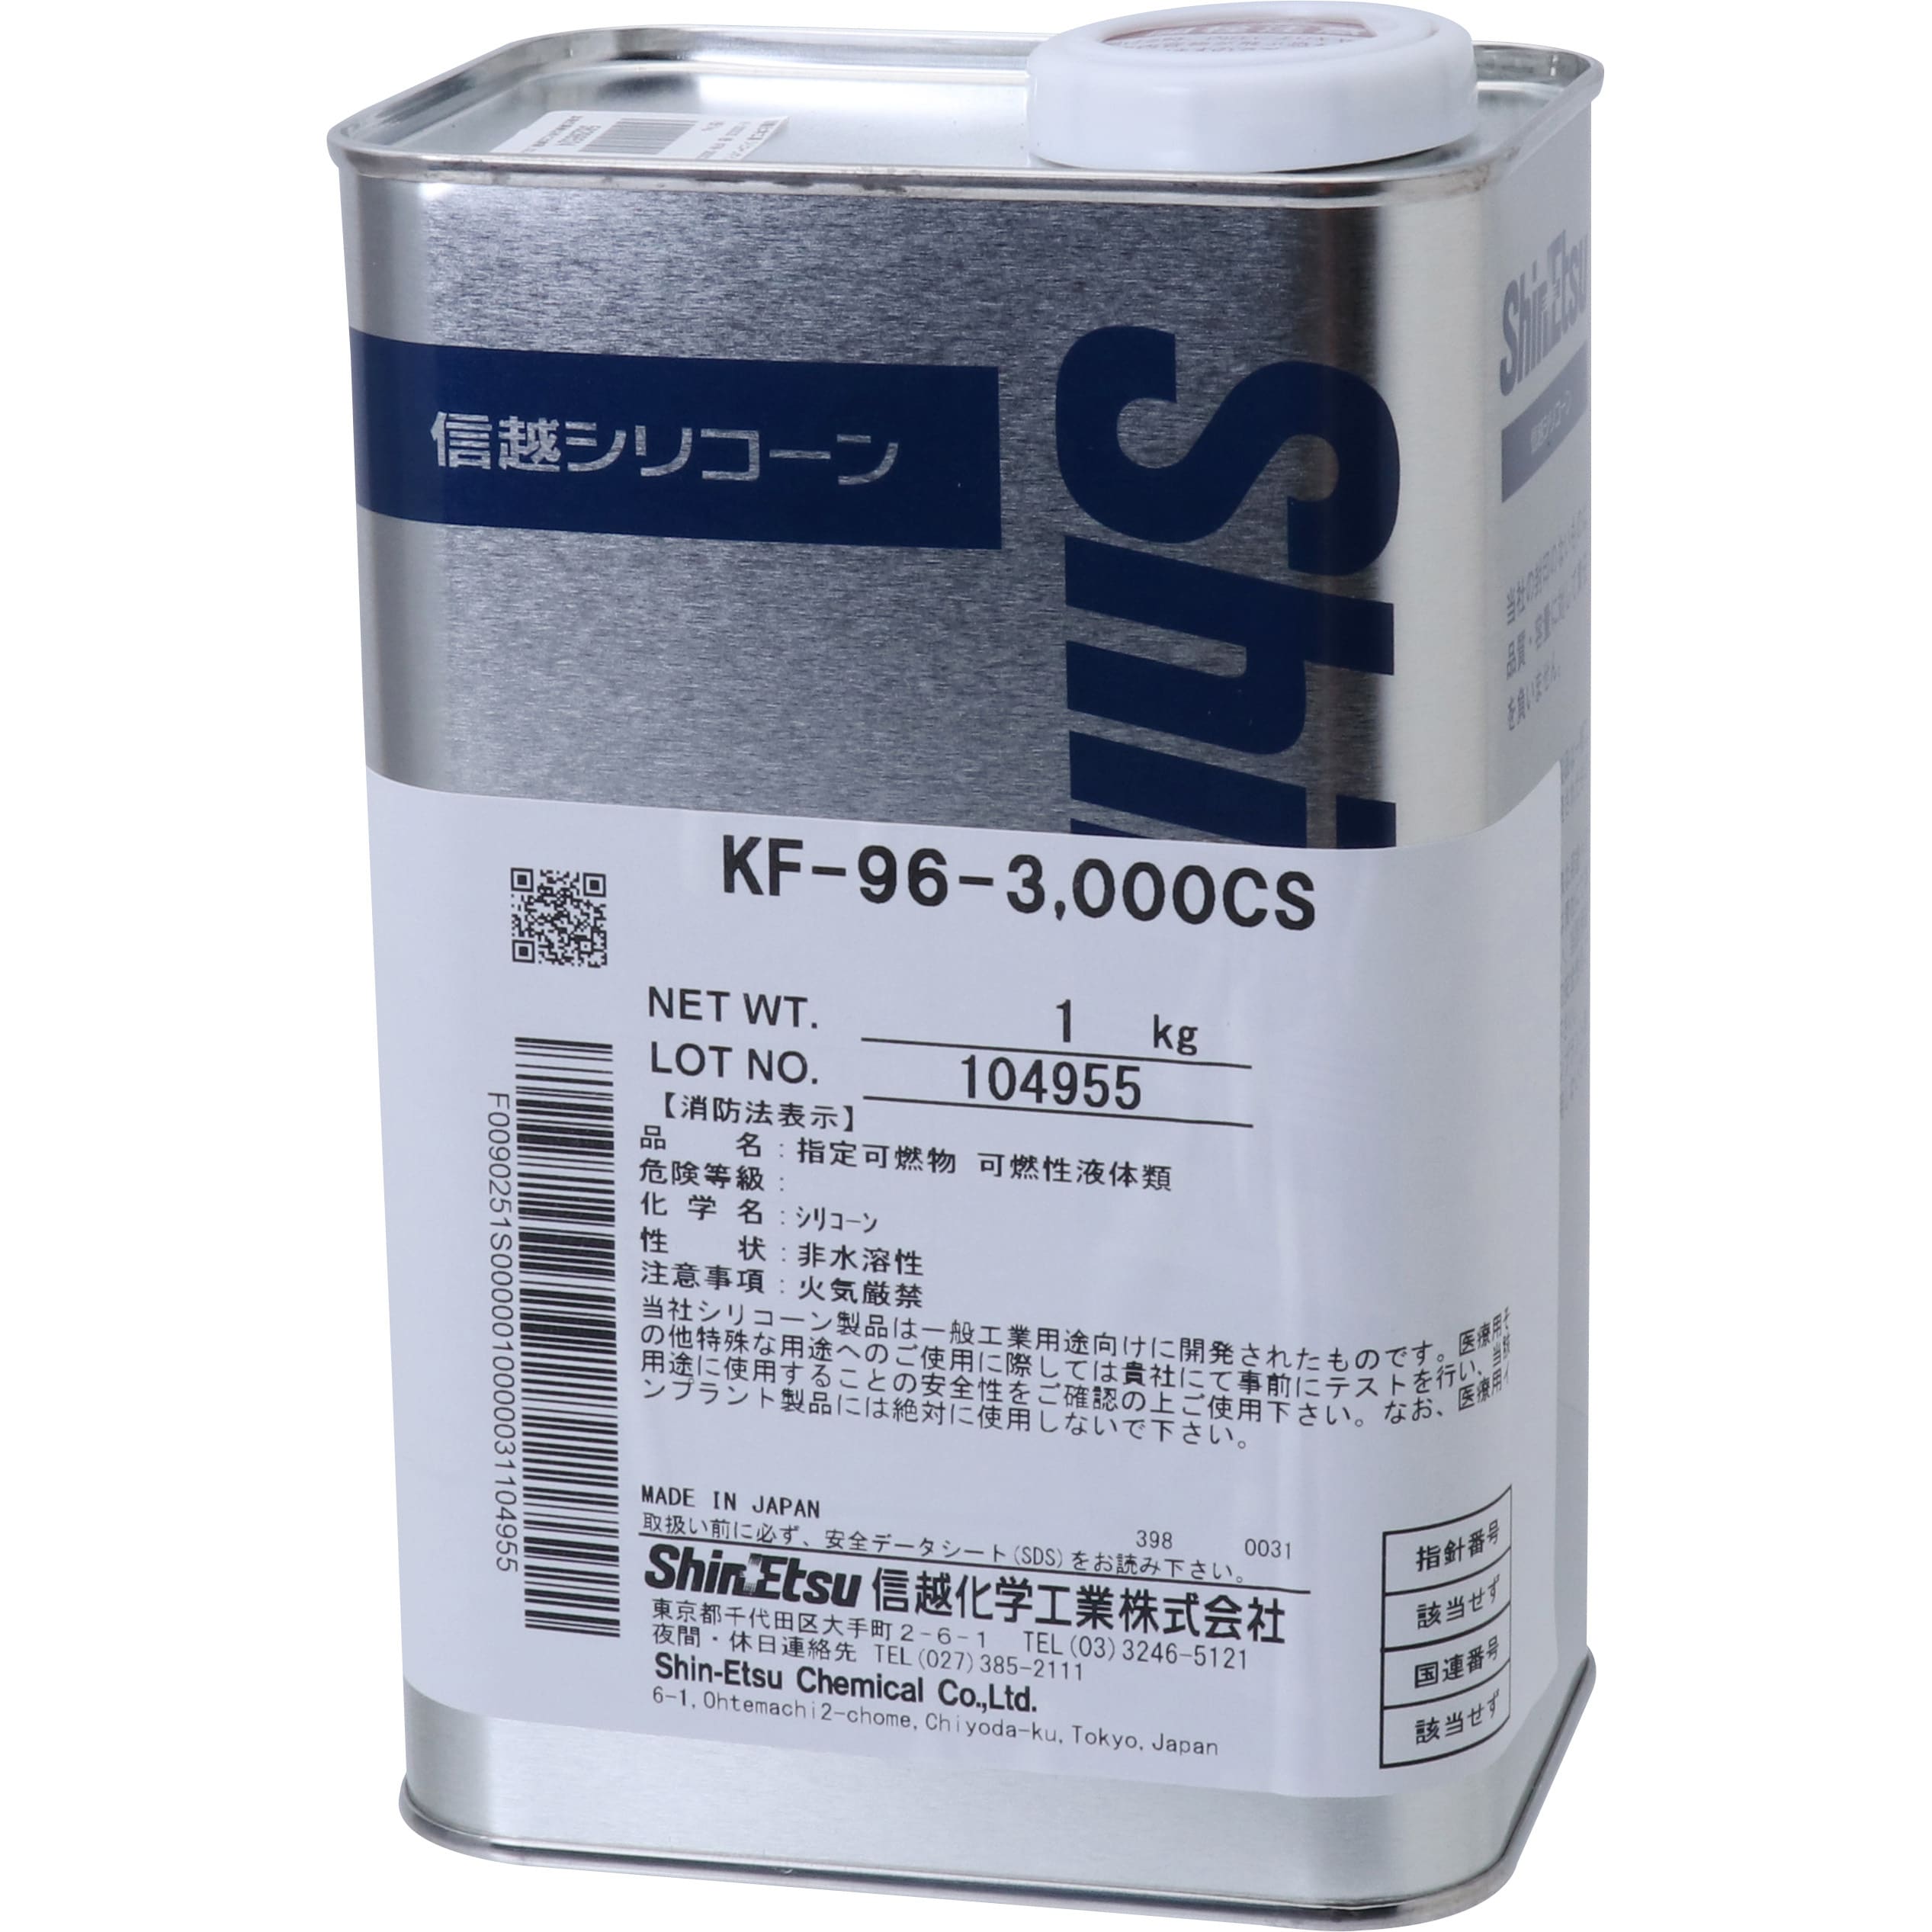 信越 シリコーンオイル 一般用 3000CS 16kg KF963000CS16 - 1